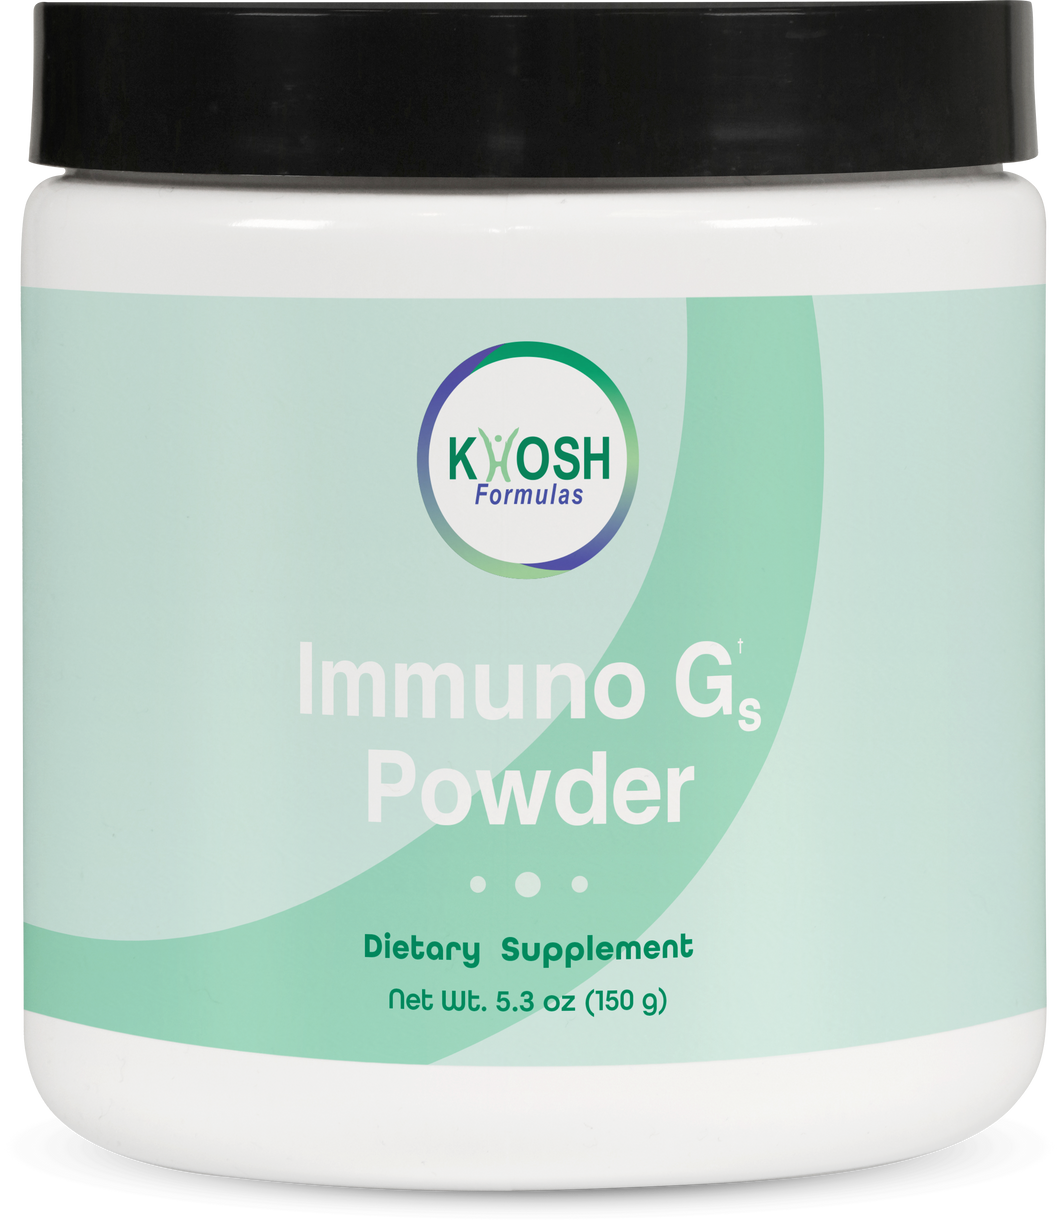 Immuno Gs Powder (5.3oz), KHOSH